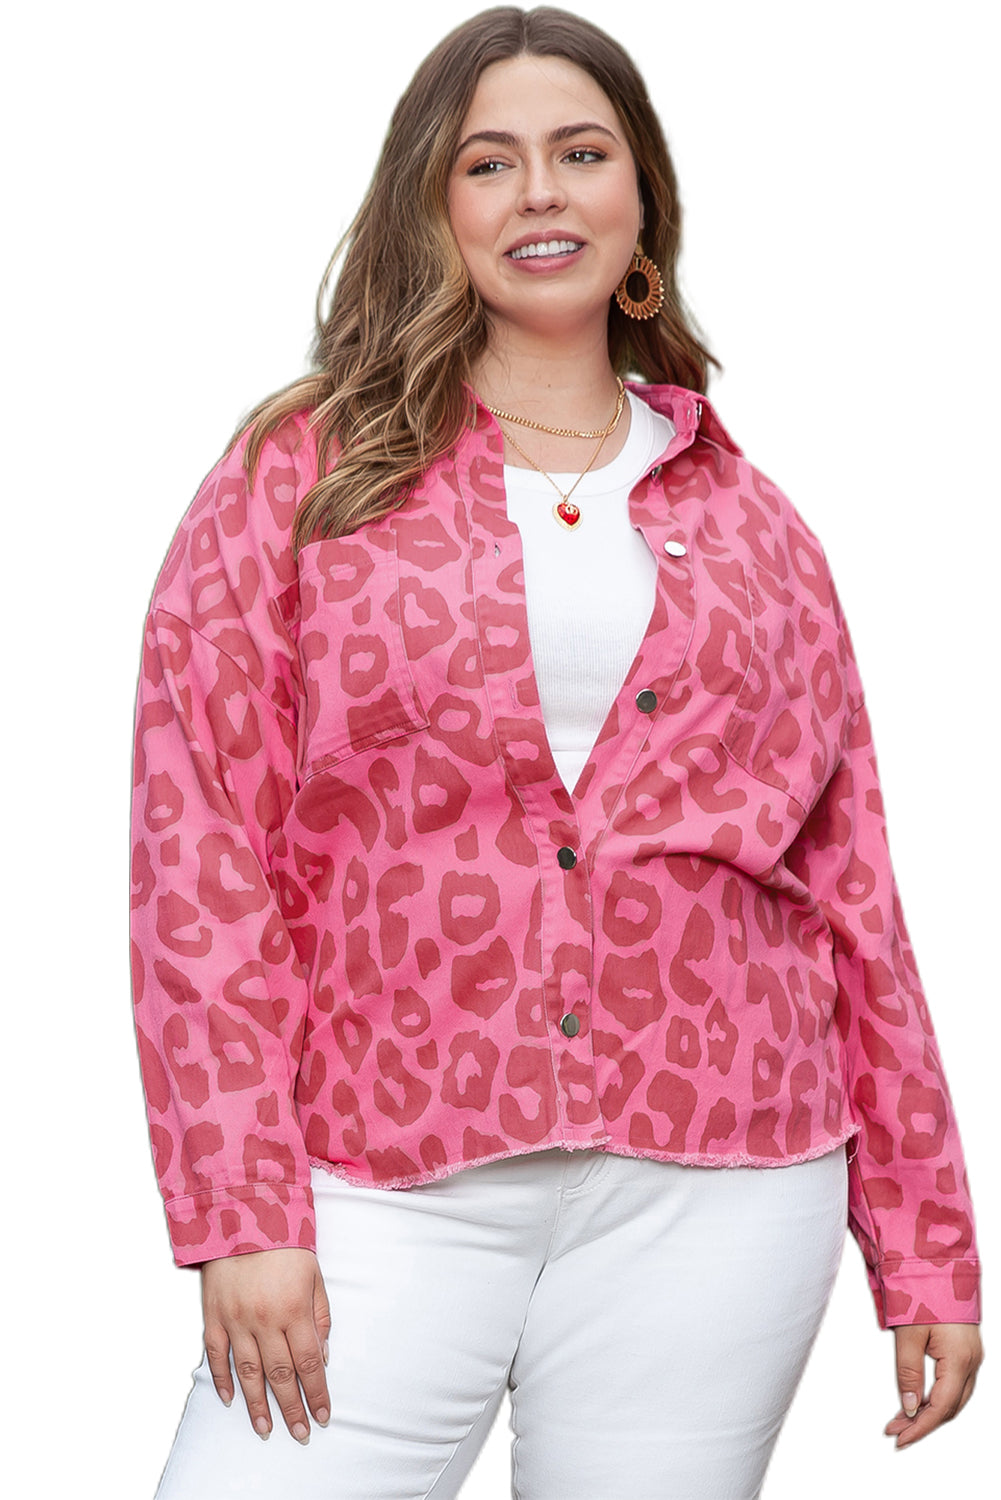 Veste rose à imprimé léopard, poignets boutonnés, ourlet brut, grande taille